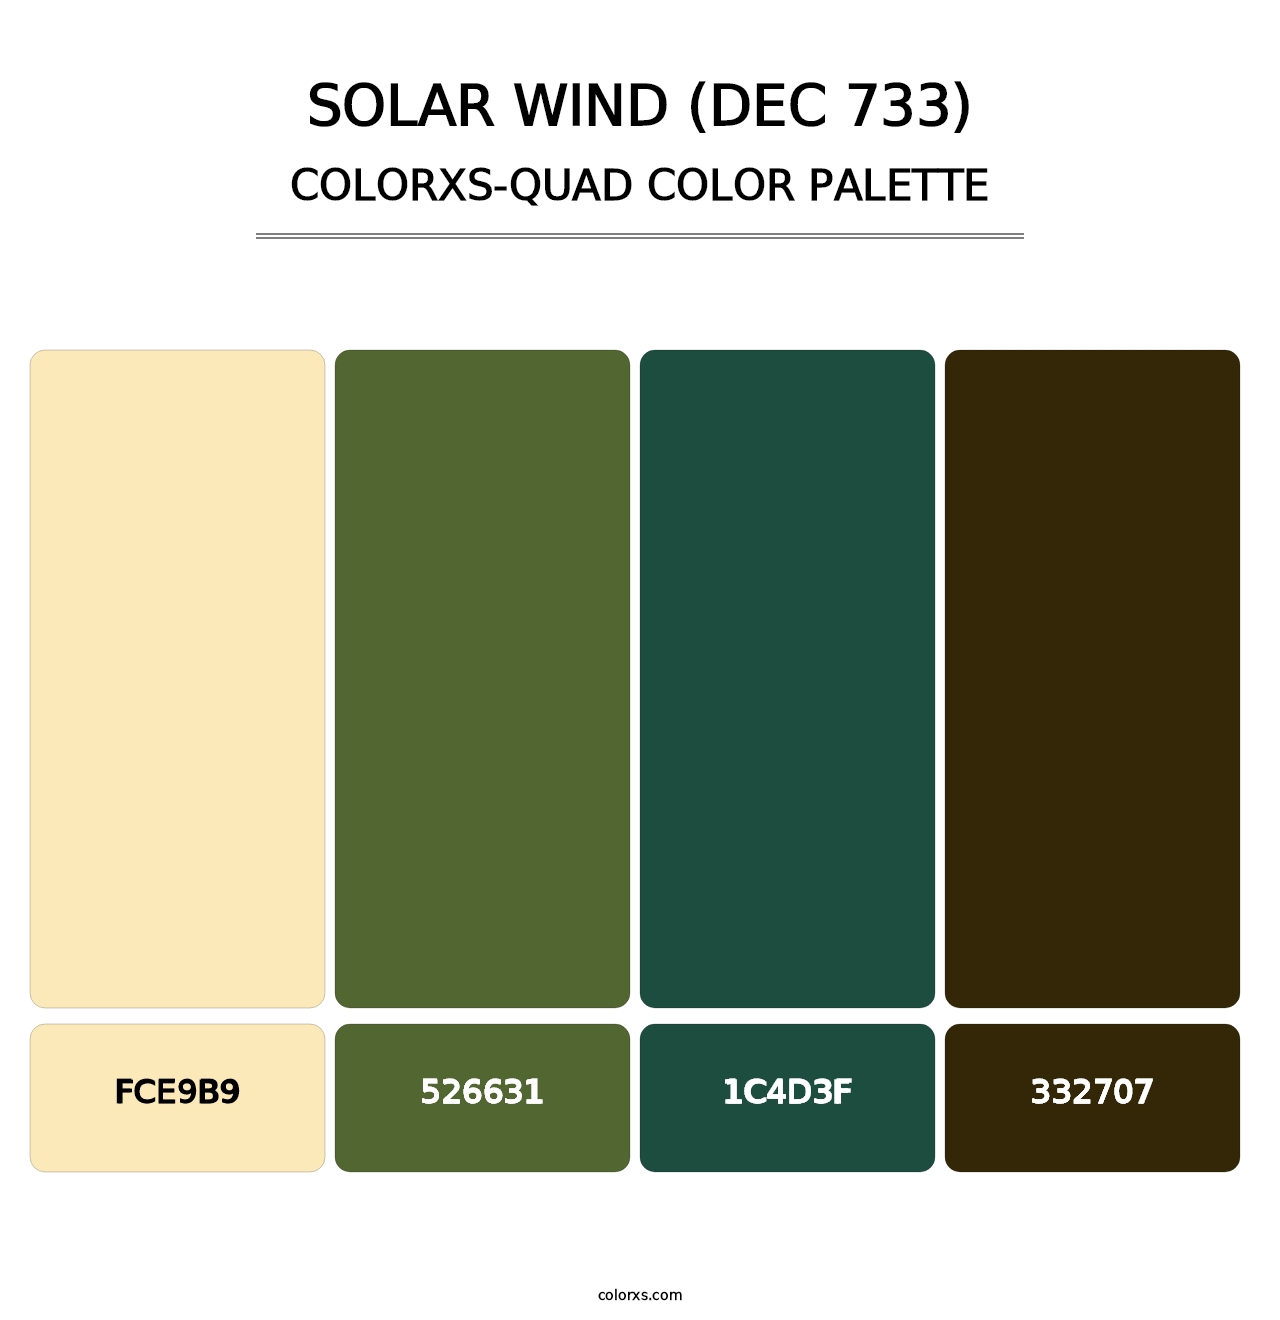 Solar Wind (DEC 733) - Colorxs Quad Palette